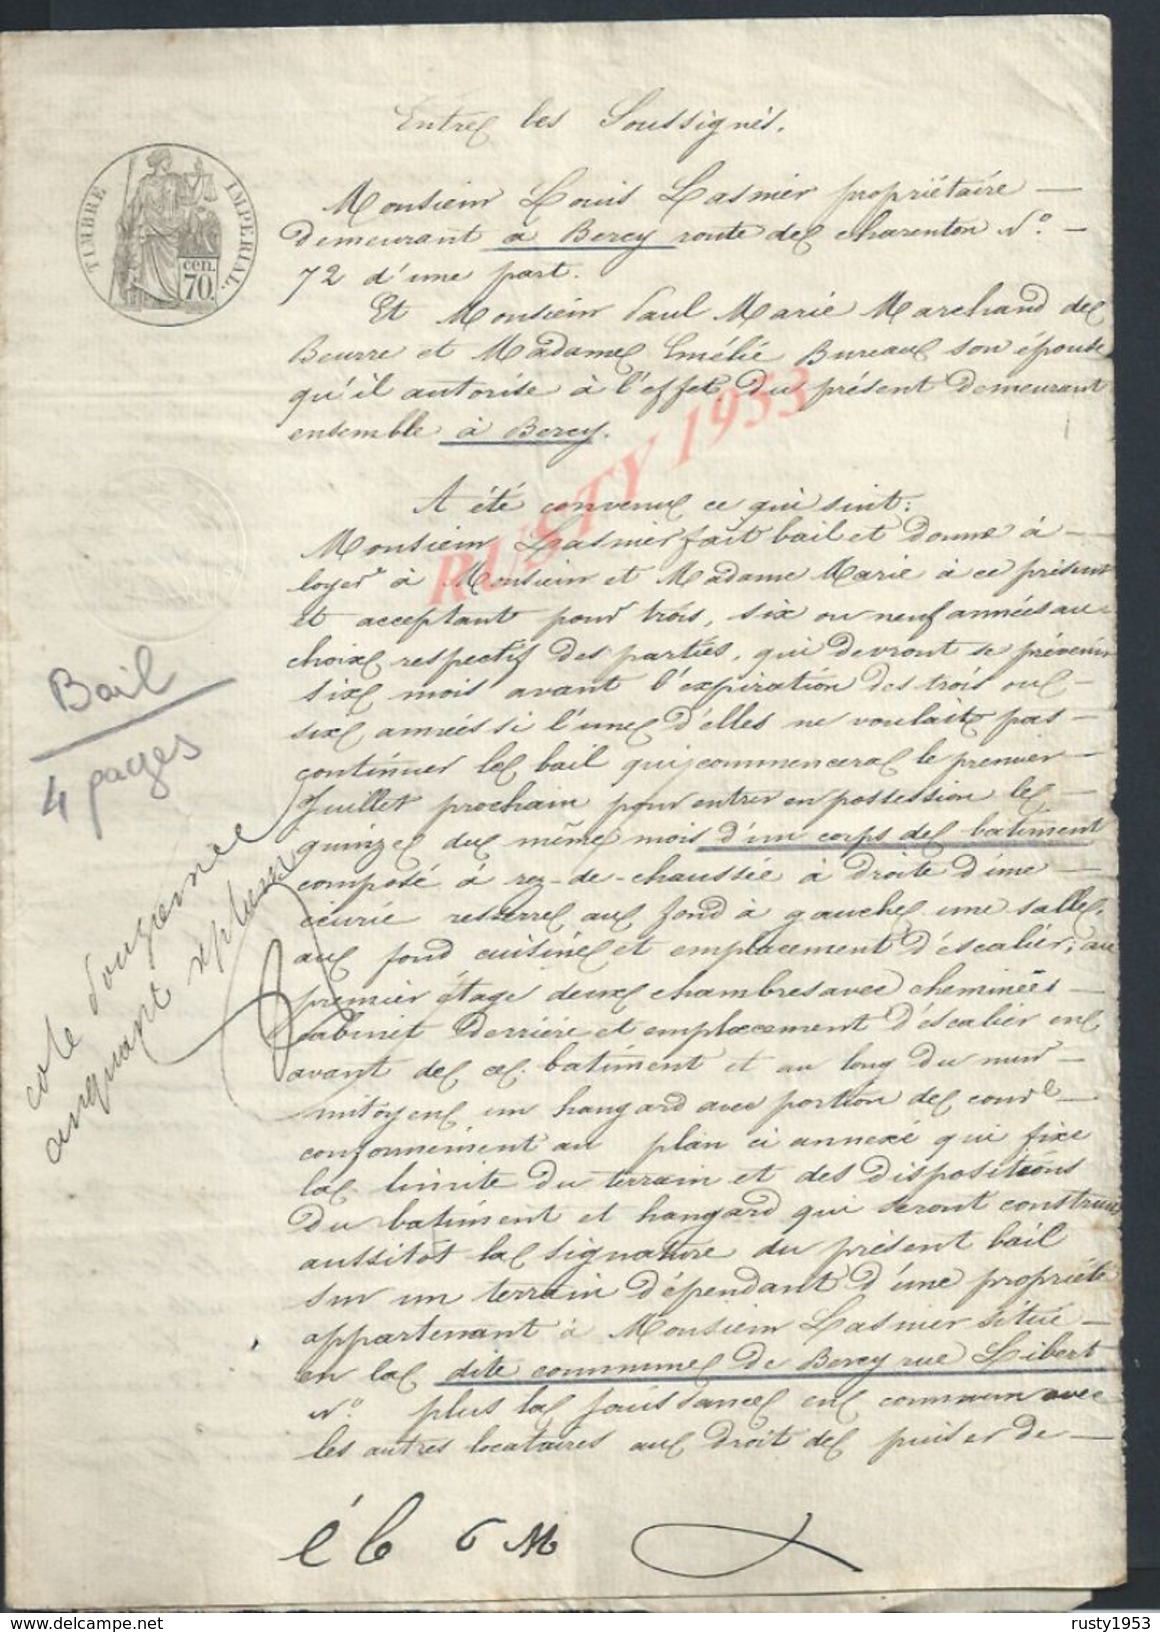 PARIS BERCY 1854 ACTE DE BAIL D UN CORPS DE BATIMENT APPROUVÉ LUNIER À PAUL MARIE & MELIE BURAUX ? 4 PAGES : - Manuscripts